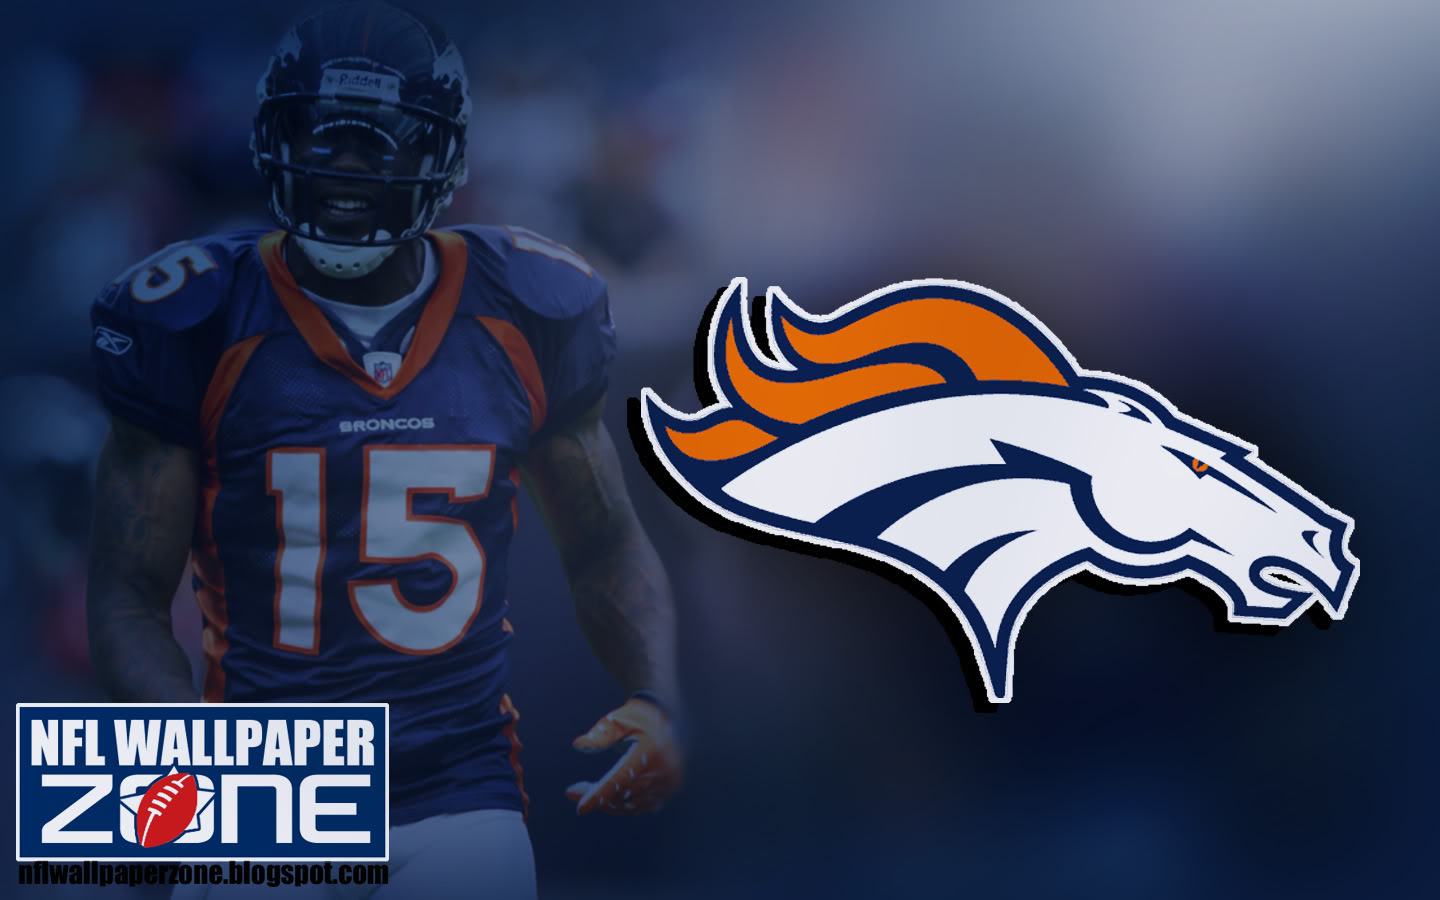 Denver Broncos , HD Wallpaper & Backgrounds